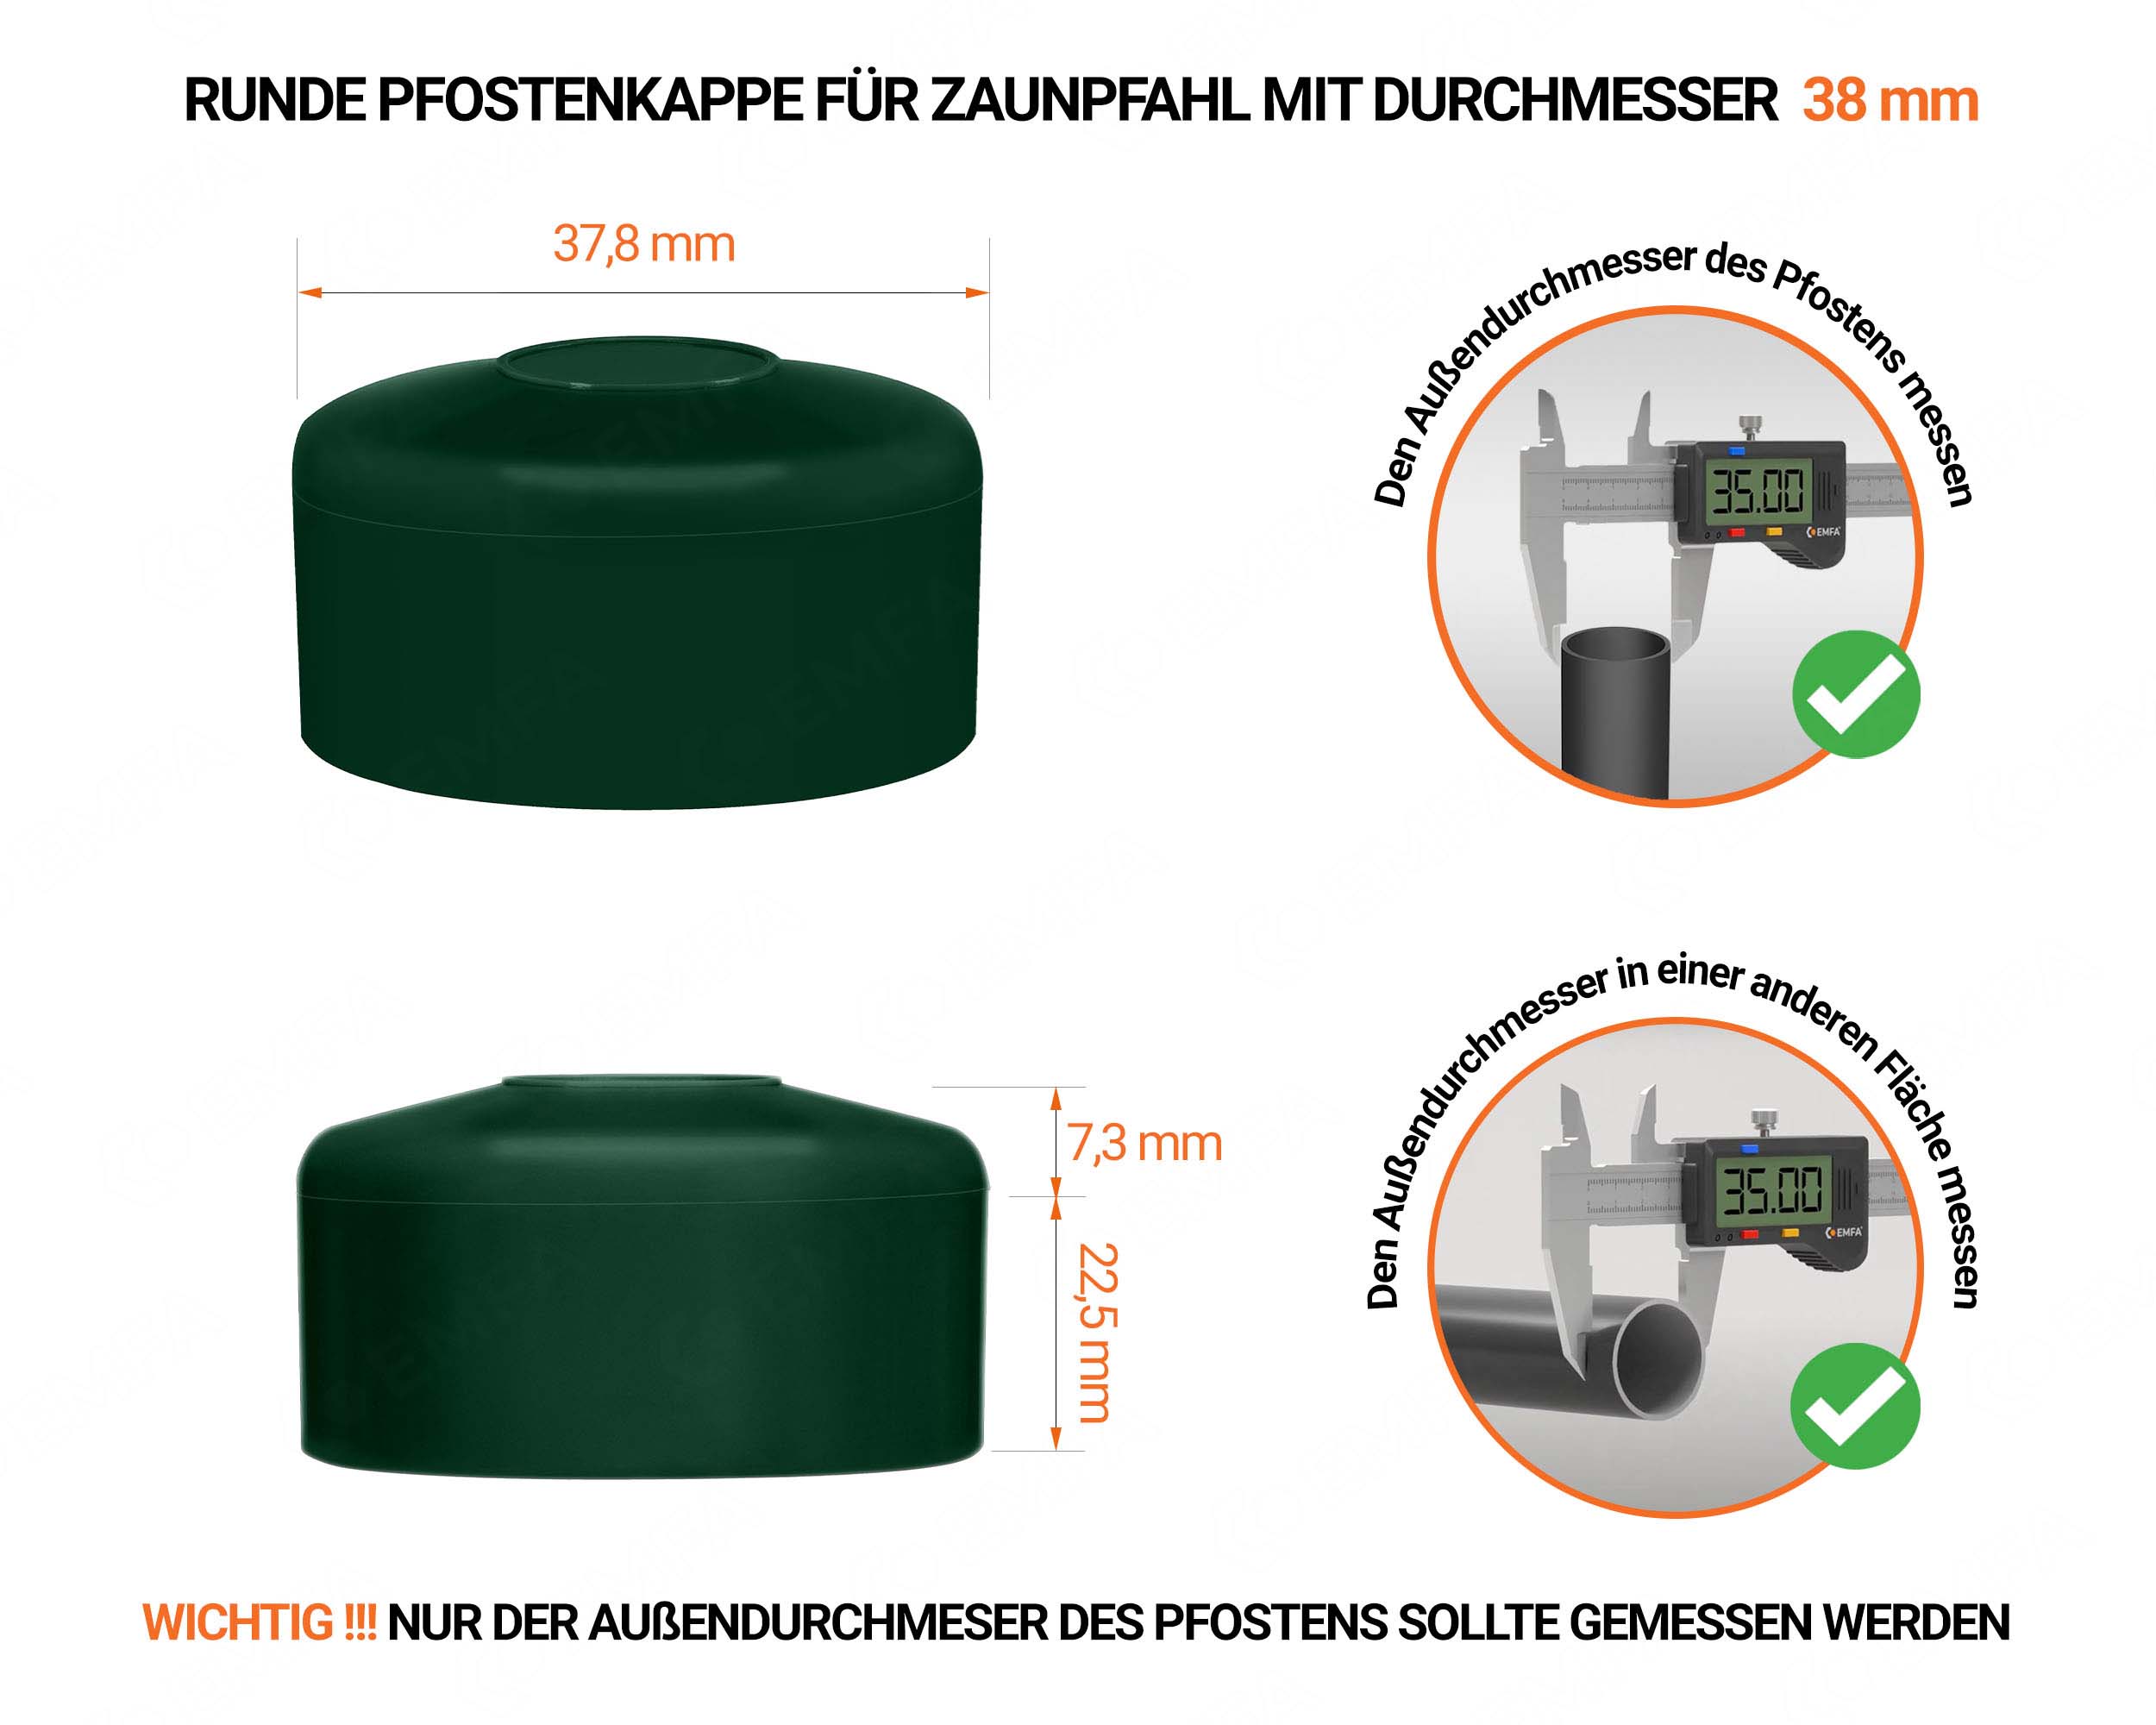 Grüne Pfostenkappen rund für Pfostendurchmesser  38 mm mit technischen Abmessungen und Anleitung für korrekte Messung